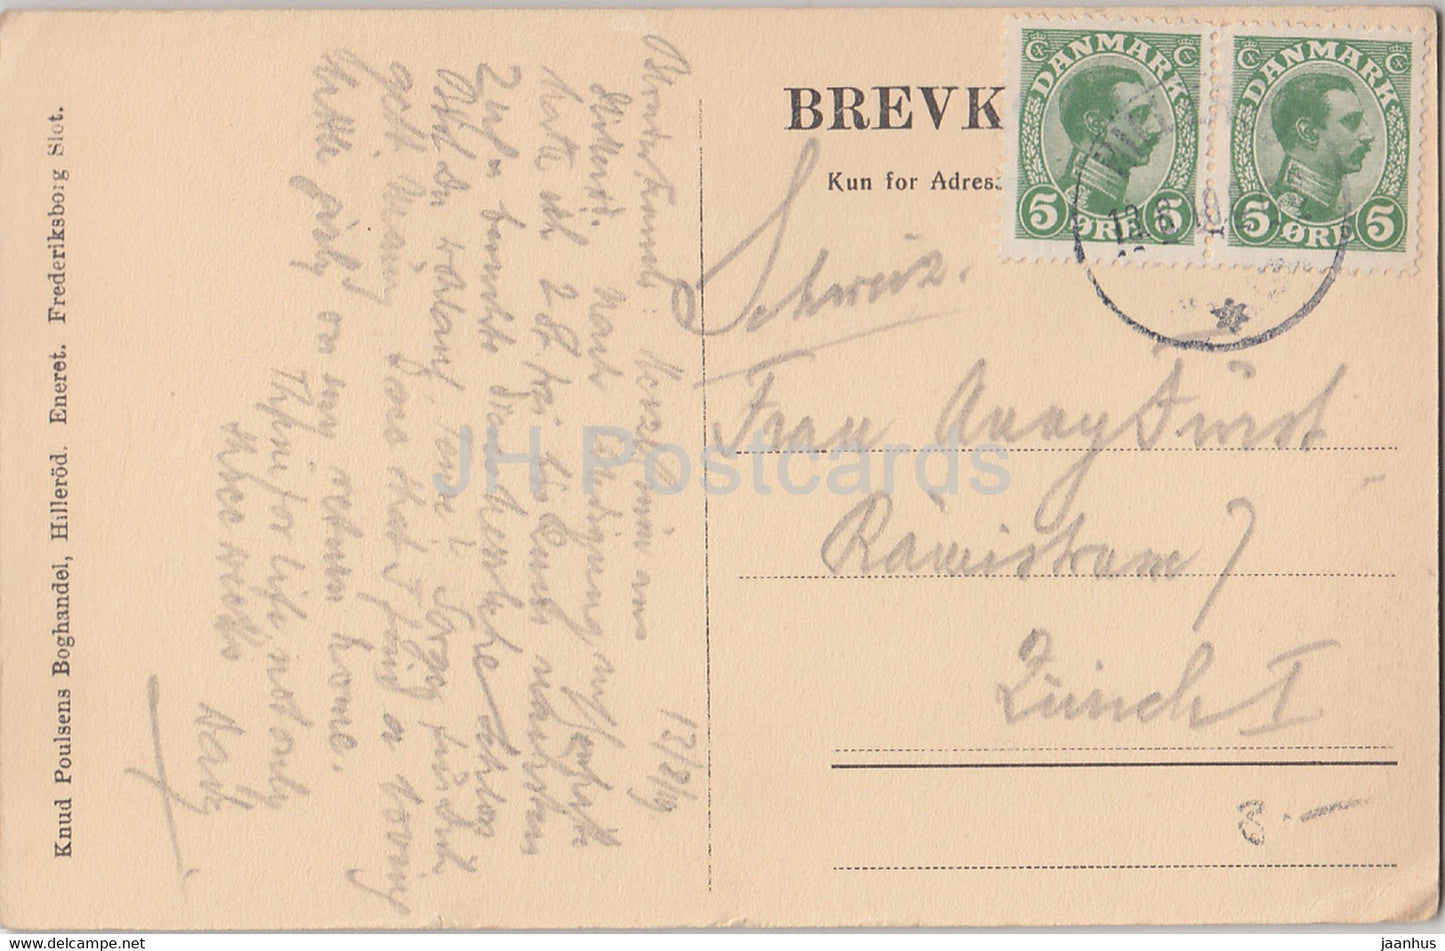 Frederiksborg Slot - château - carte postale ancienne - 1919 - Danemark - utilisé